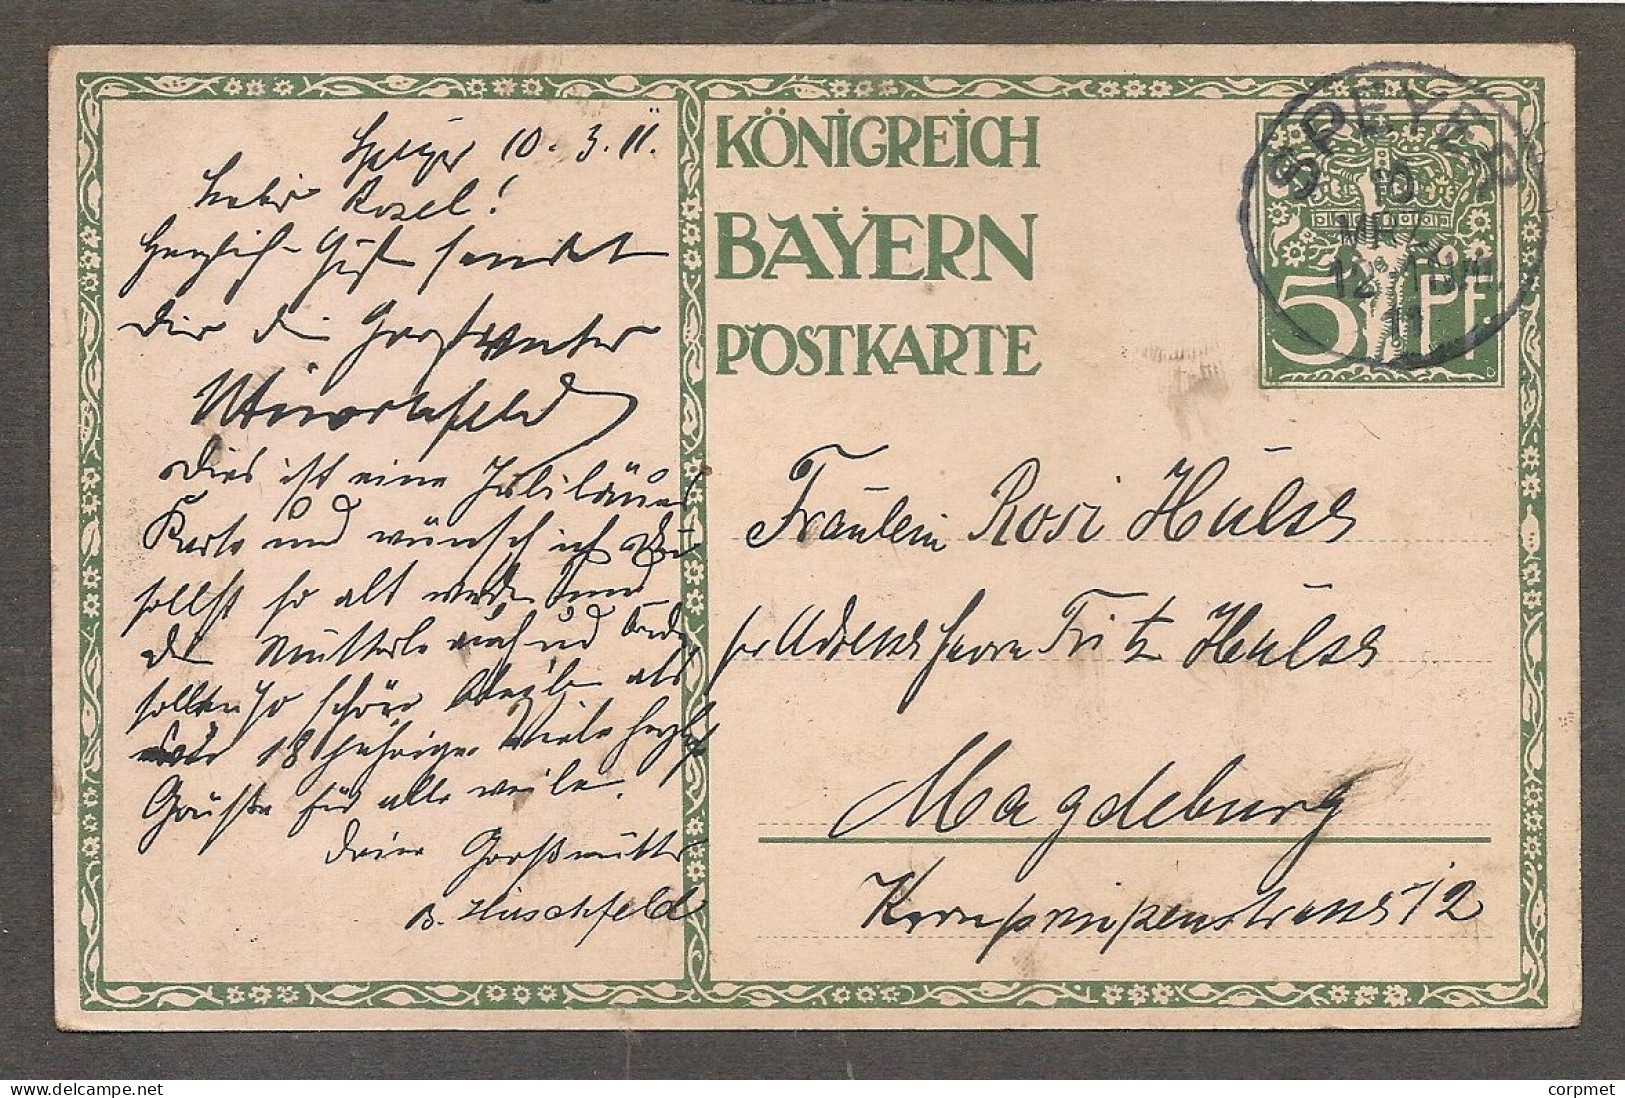 DEUTSCHLAND GERMANY KONIGREICH BAYERN POSTKARTE 1821-1911 - ILLUSTRATEUR DIEZ POSTKARTE - Vf SPEYER To MAGDEBURG 10/3/11 - Briefe U. Dokumente